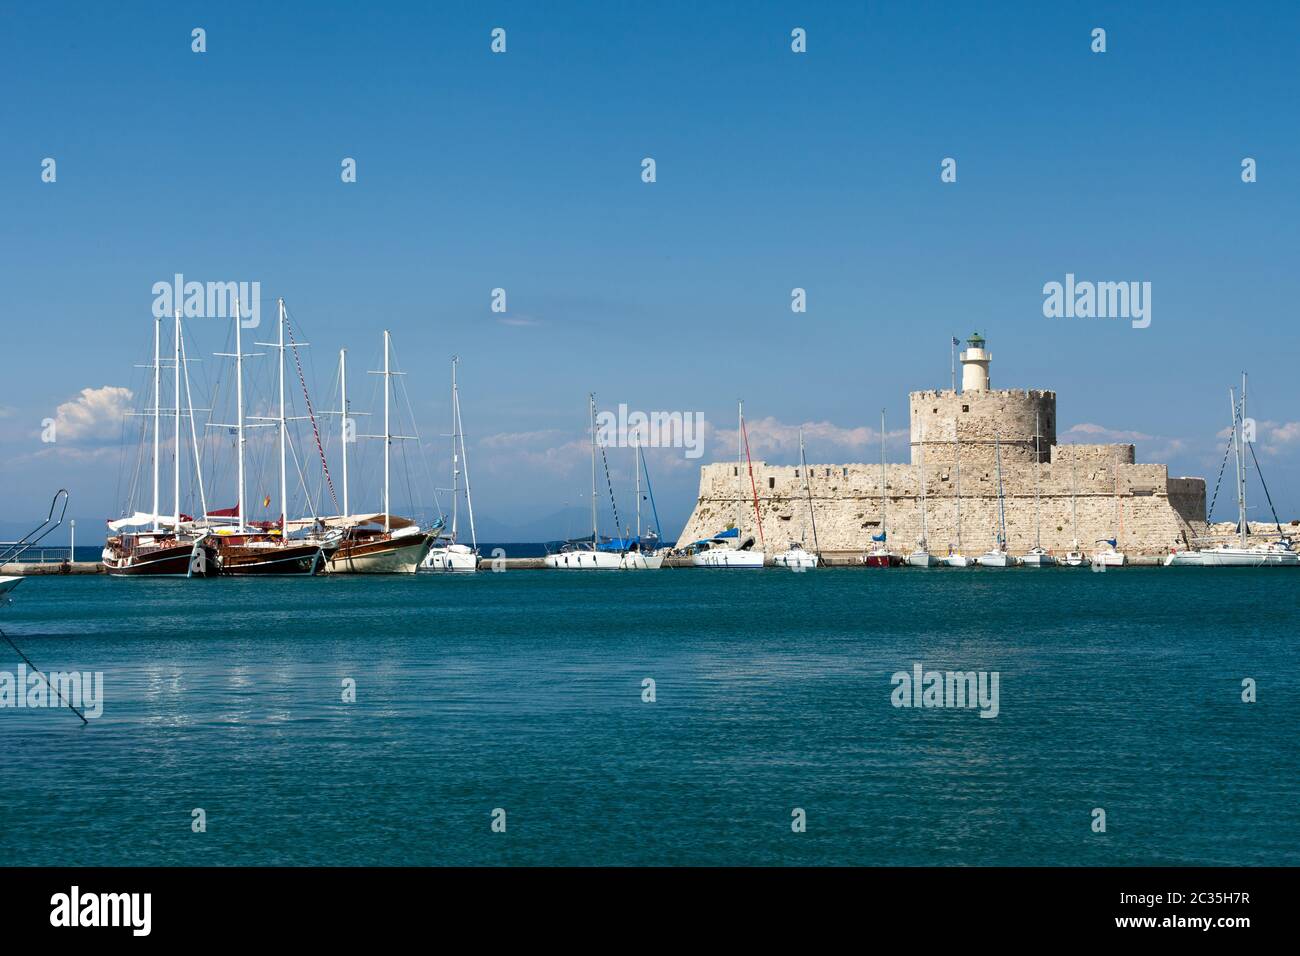 Forteresse médiévale de Saint Nicolas, maintenant, le site d'un phare, dans le port de Mandraki, Rhodes Ville nouvelle, la Grèce. Banque D'Images